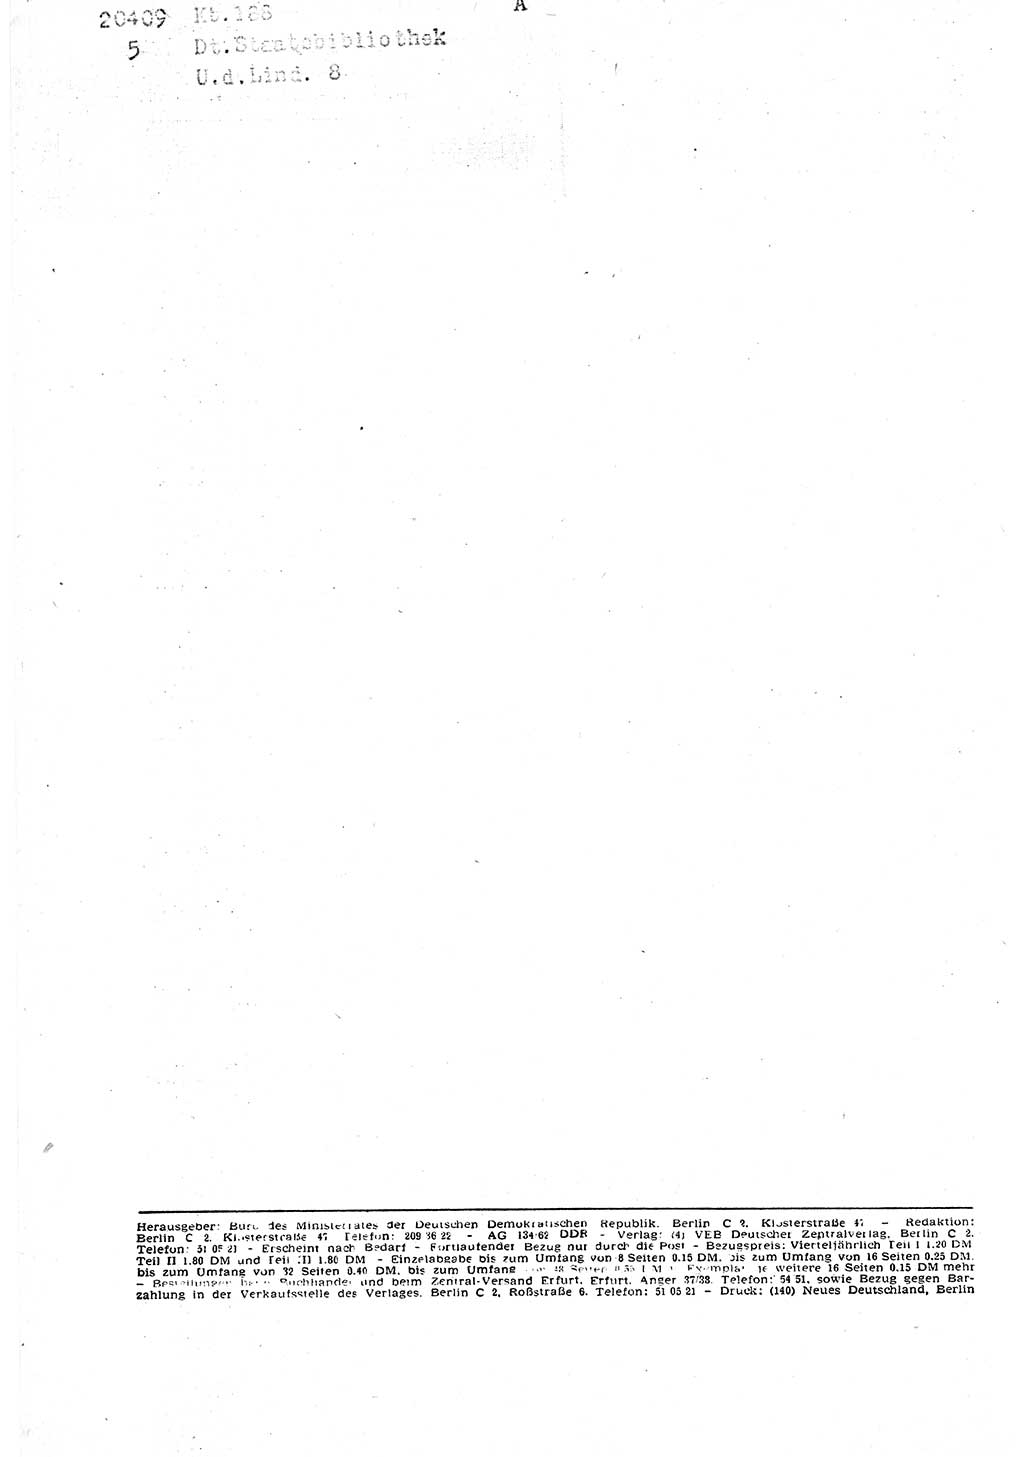 Gesetzblatt (GBl.) der Deutschen Demokratischen Republik (DDR) Teil Ⅰ 1962, Seite 66 (GBl. DDR Ⅰ 1962, S. 66)